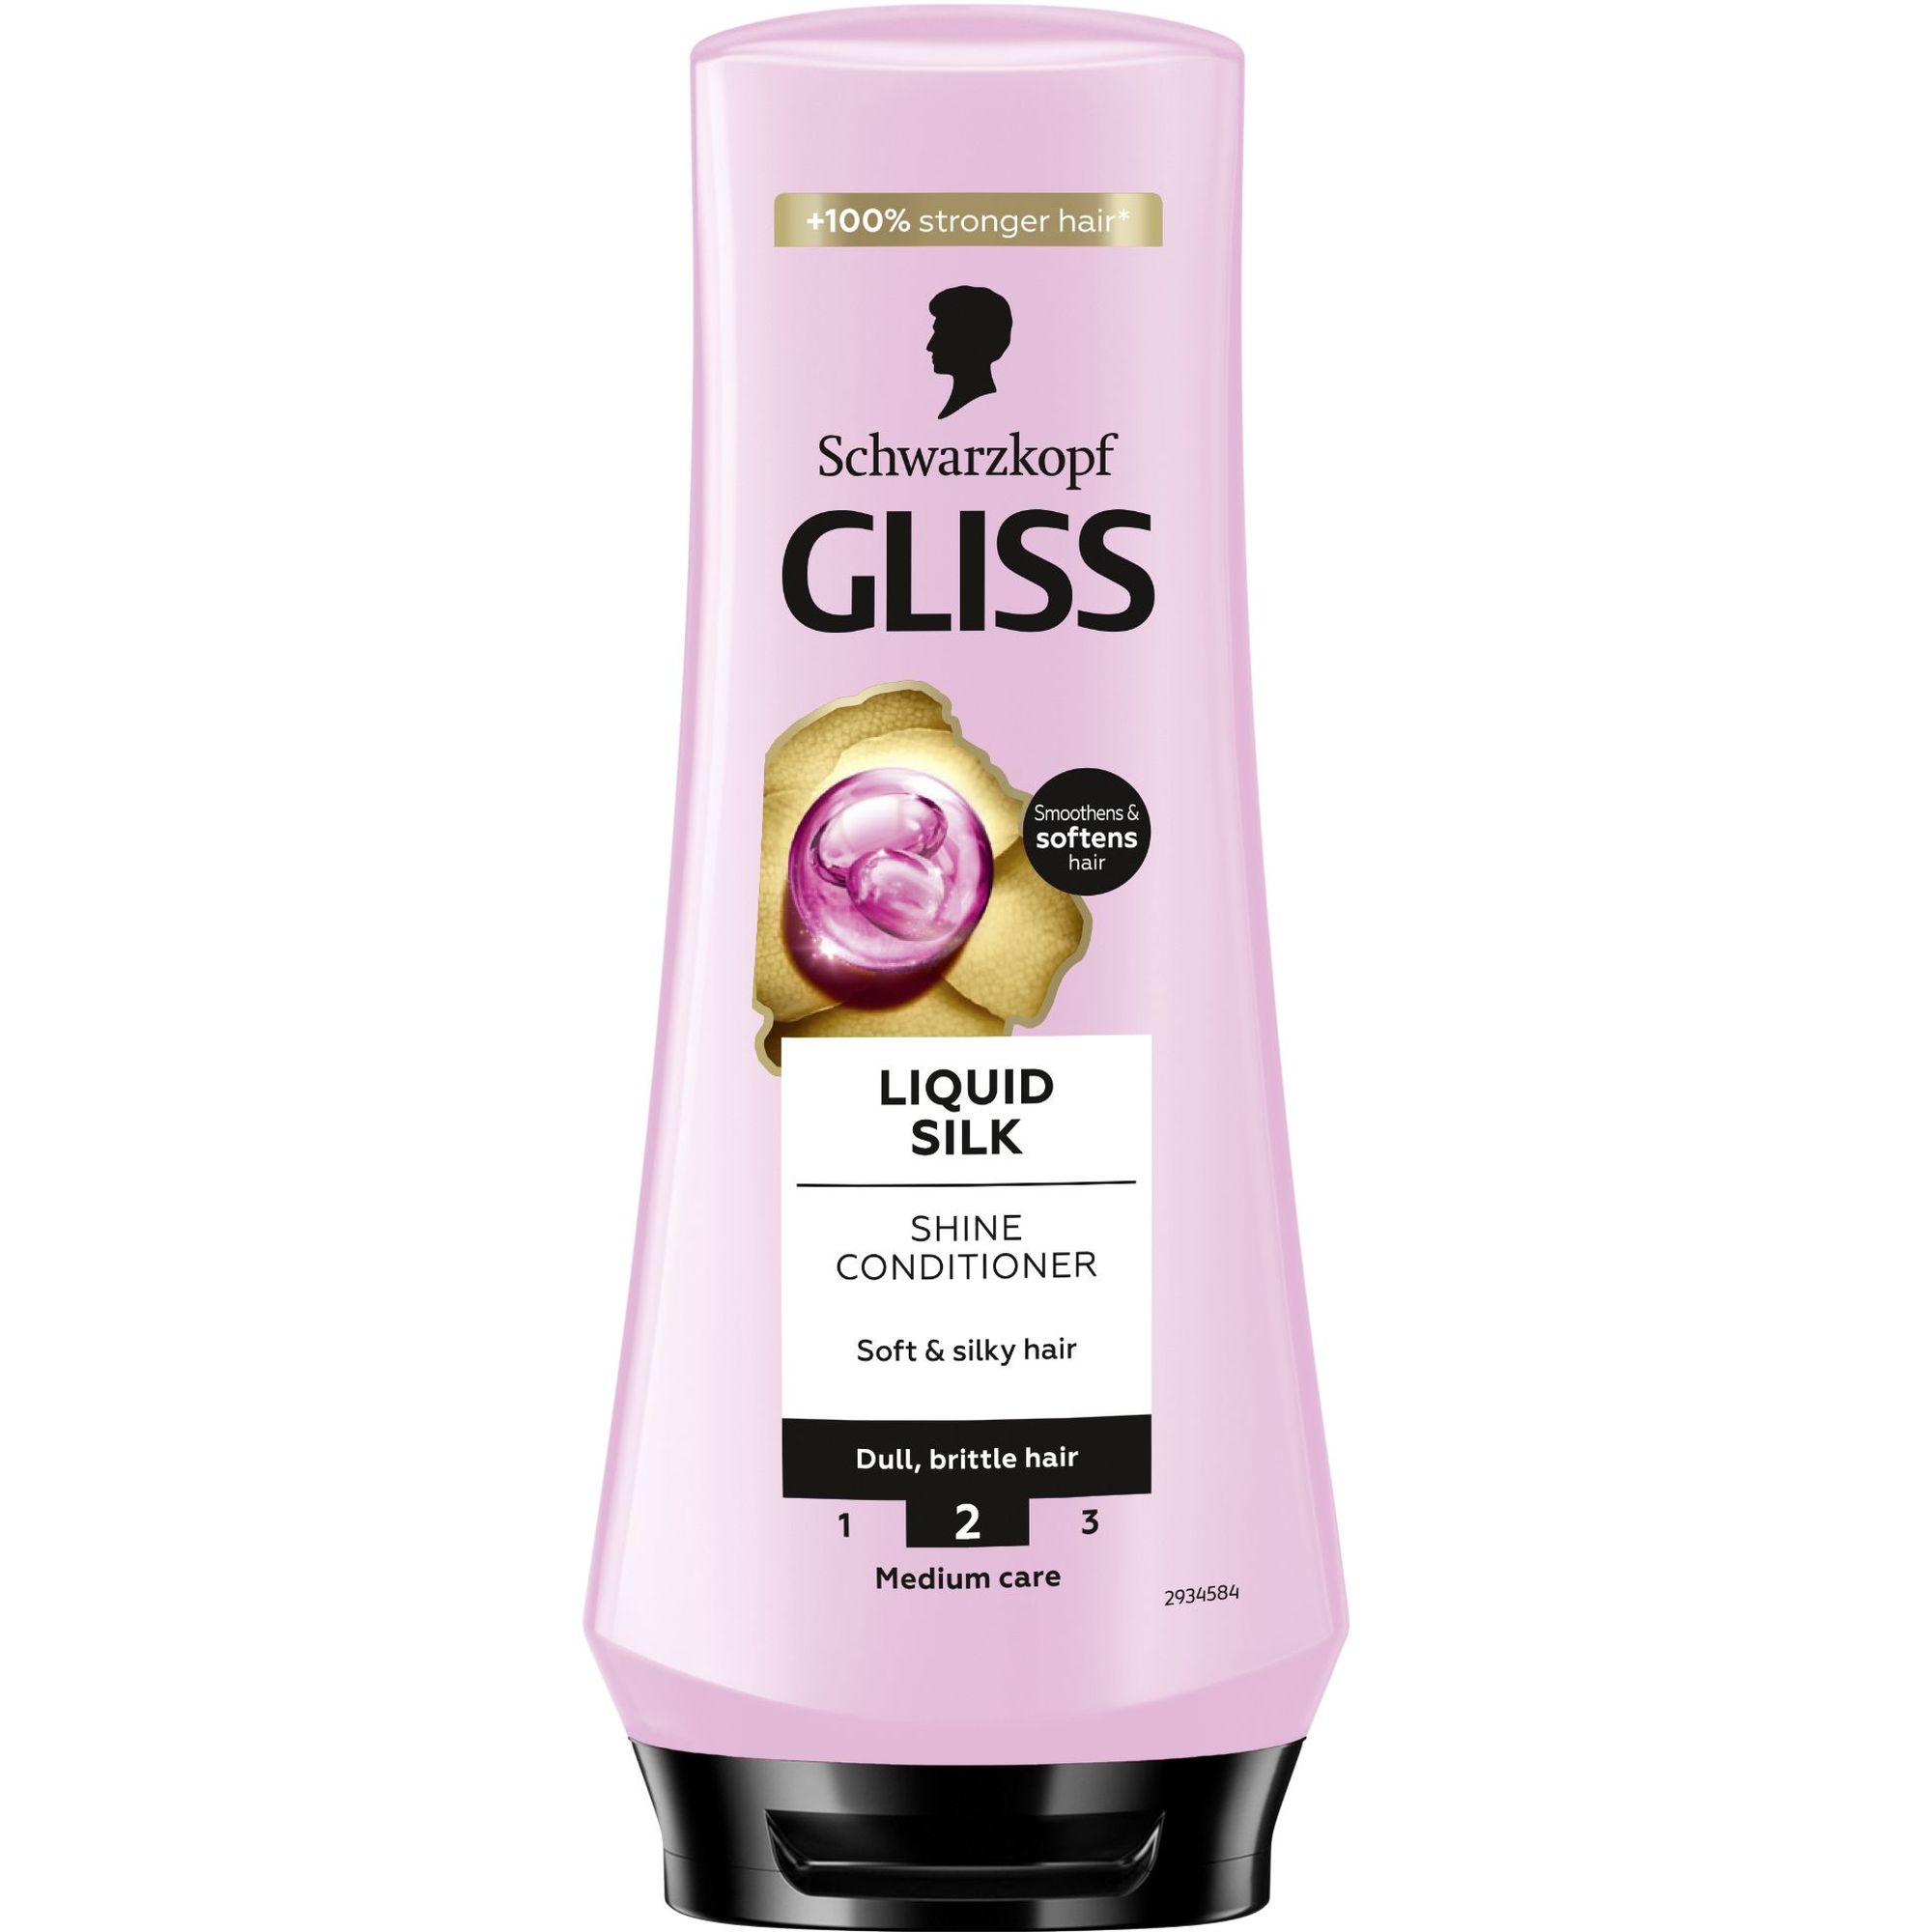 Бальзам Gliss Liquid Silk Shine для ломких и тусклых волос 200 мл - фото 1